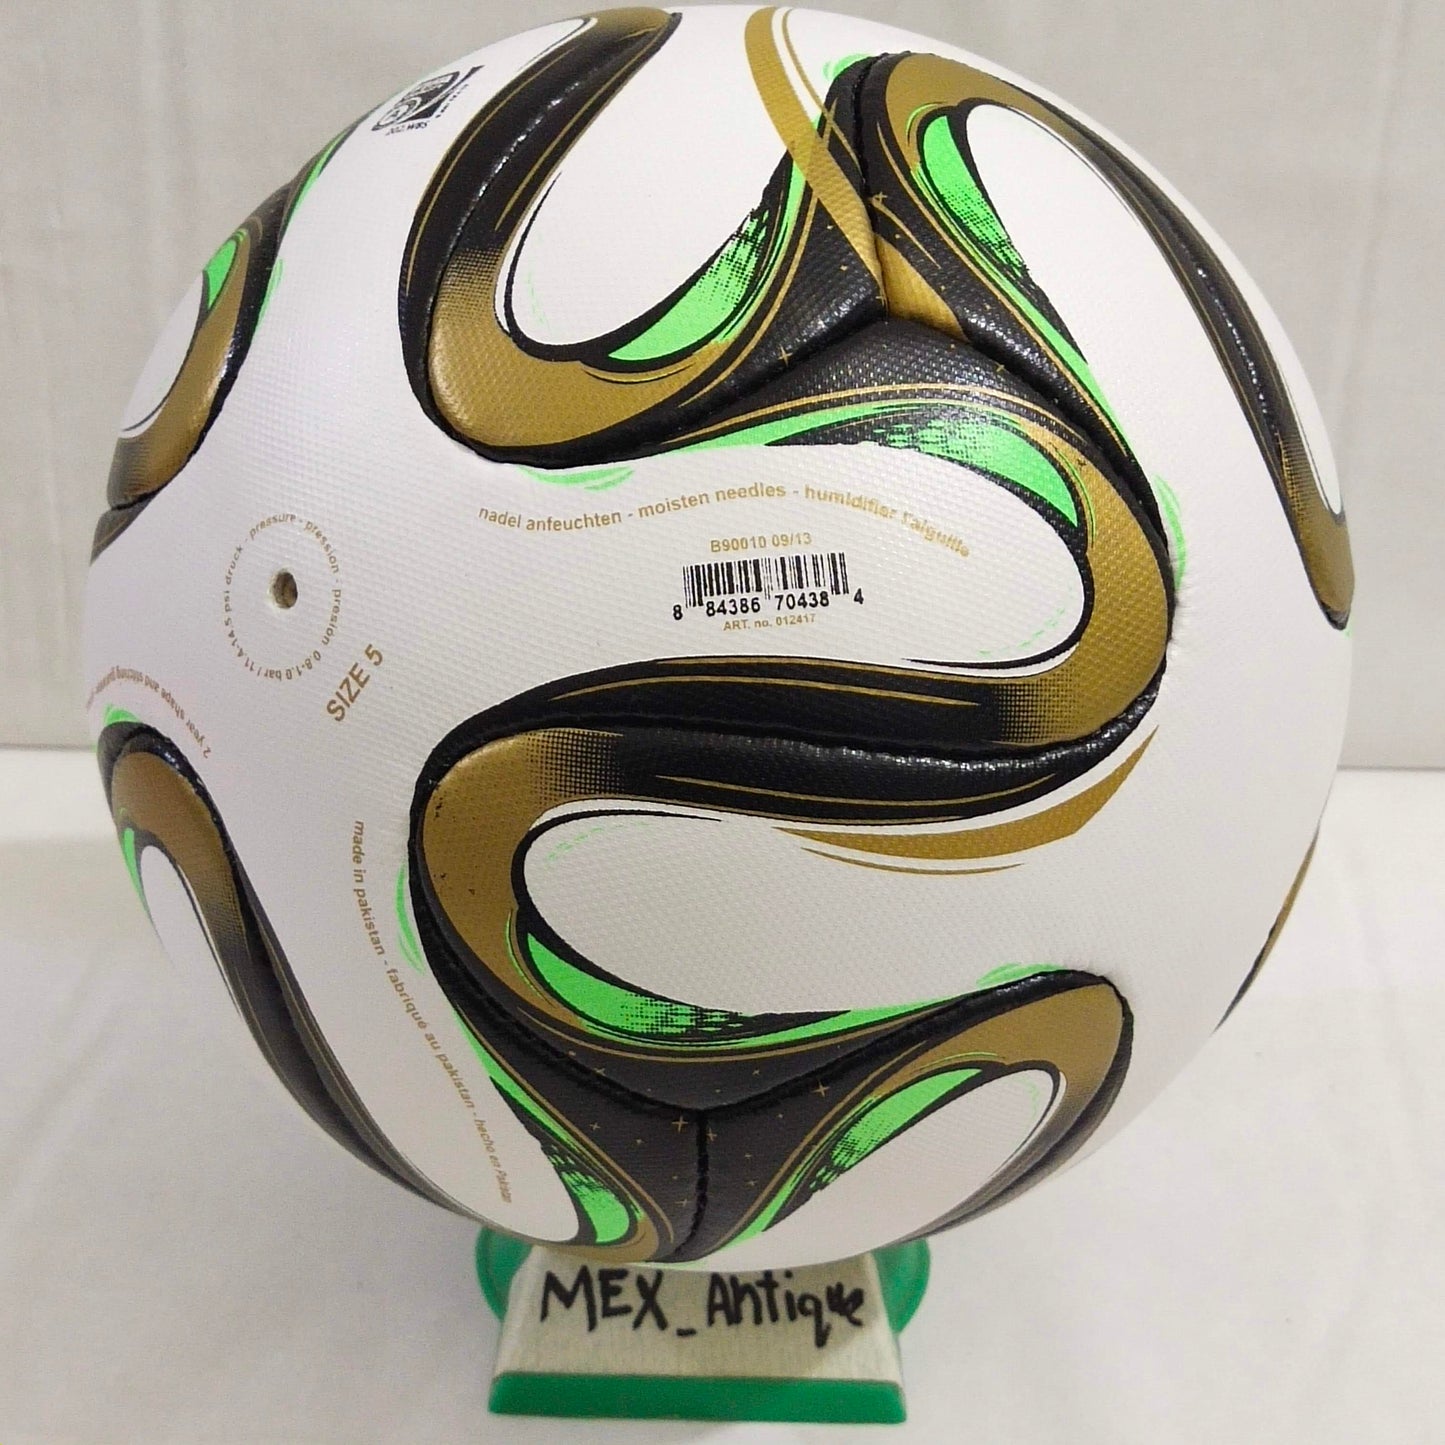 Adidas Brazuca Rio | Final Ball | 2014 | FIFA World Cup Ball | SIZE 5 04